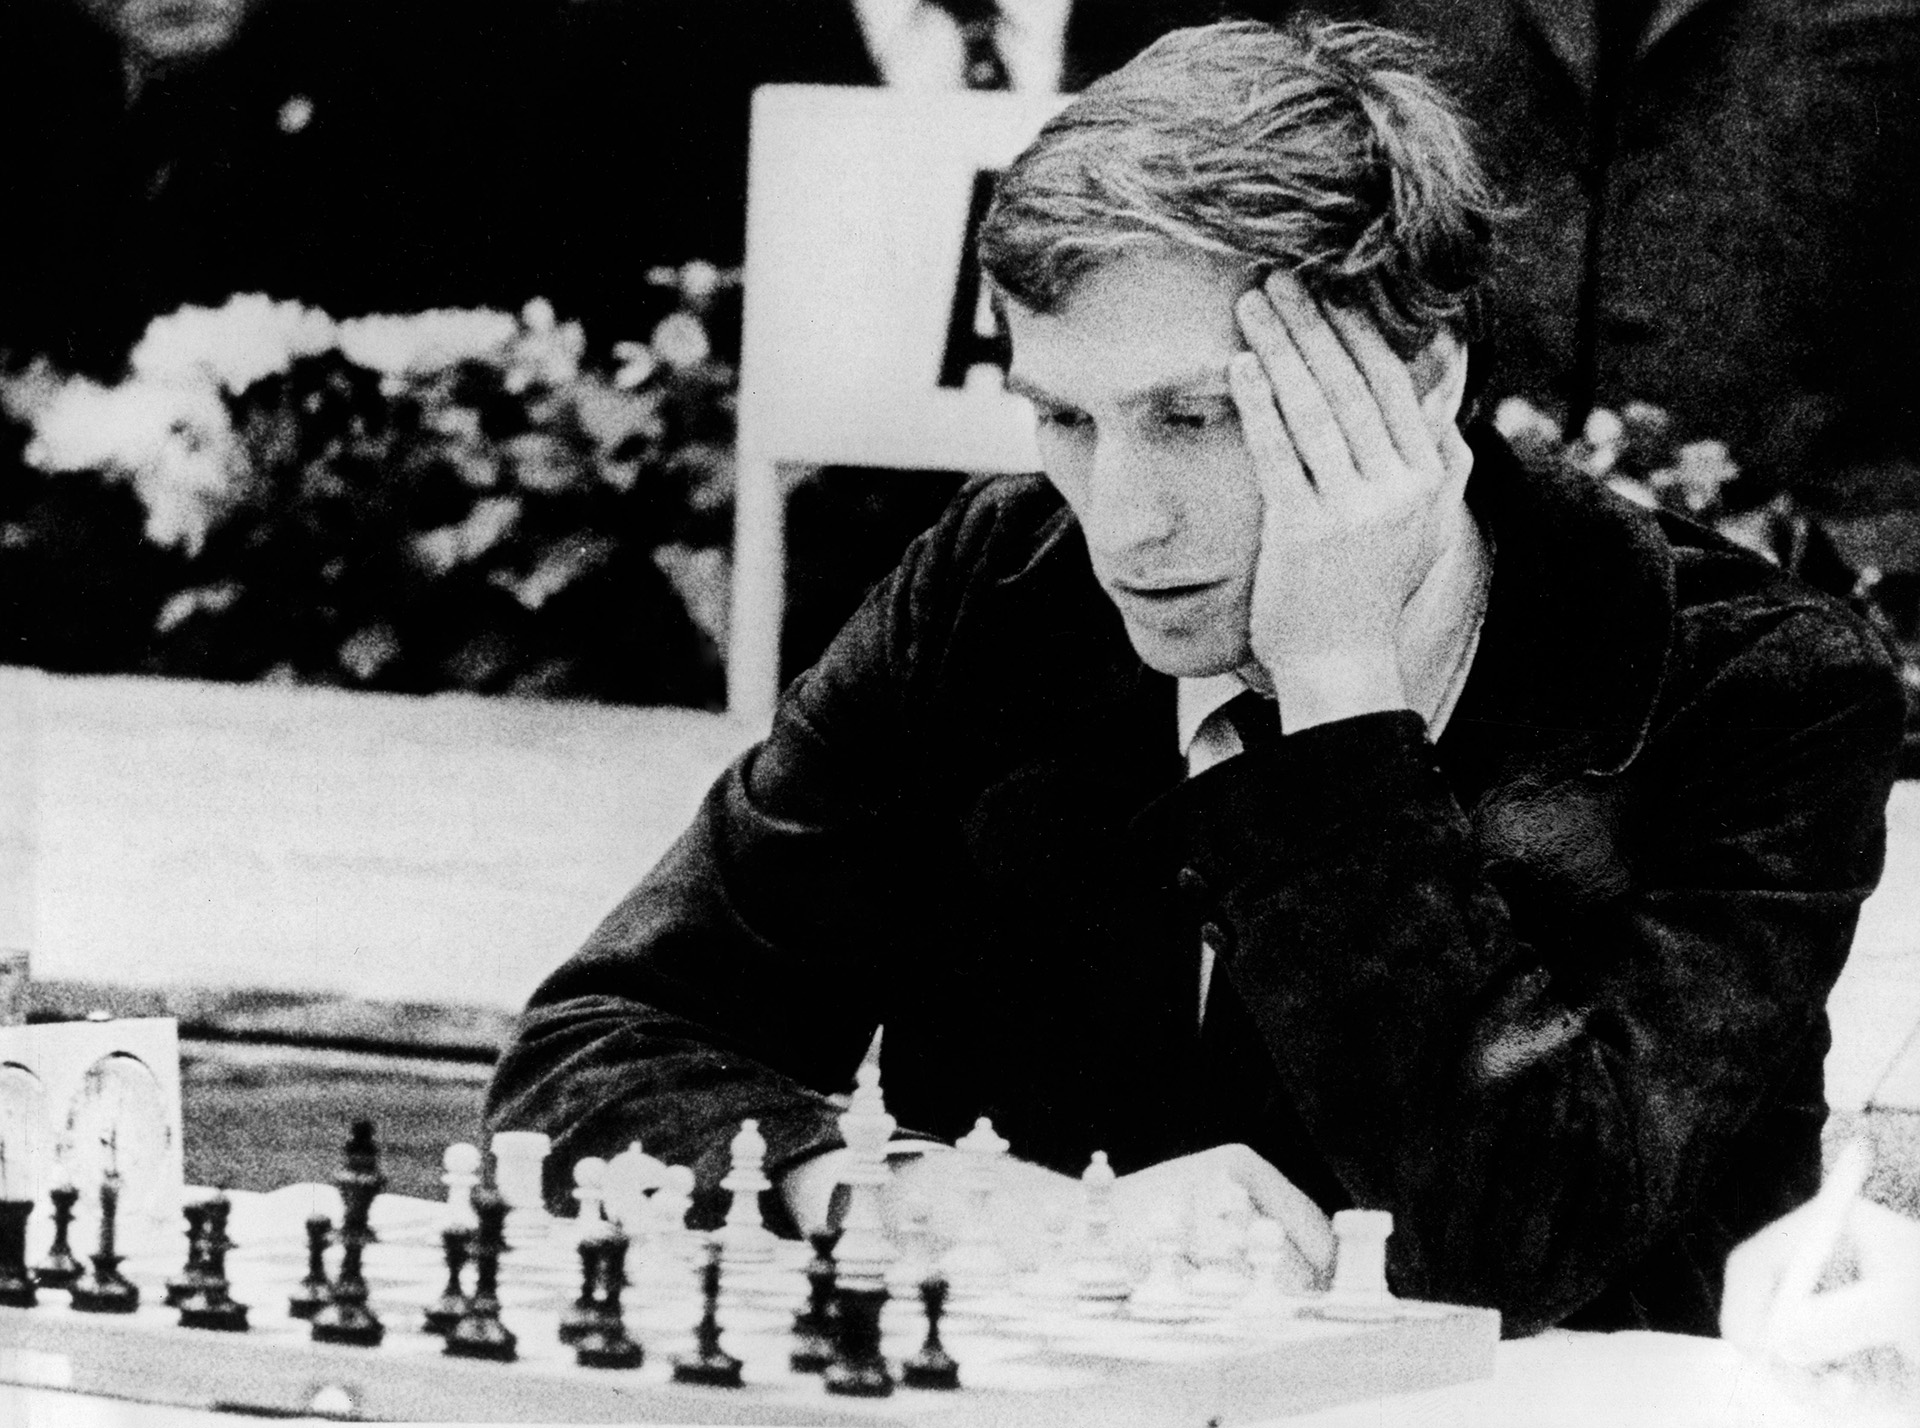 En su pubertad, Bobby Fischer compartió equipo con el ya maduro Whitaker, y llegaron a viajar juntos para disputar torneos en distintas ciudades. Llevaban un tablero magnético para desafiarse en el trayecto, aunque casi siempre ganaba Whitaker.